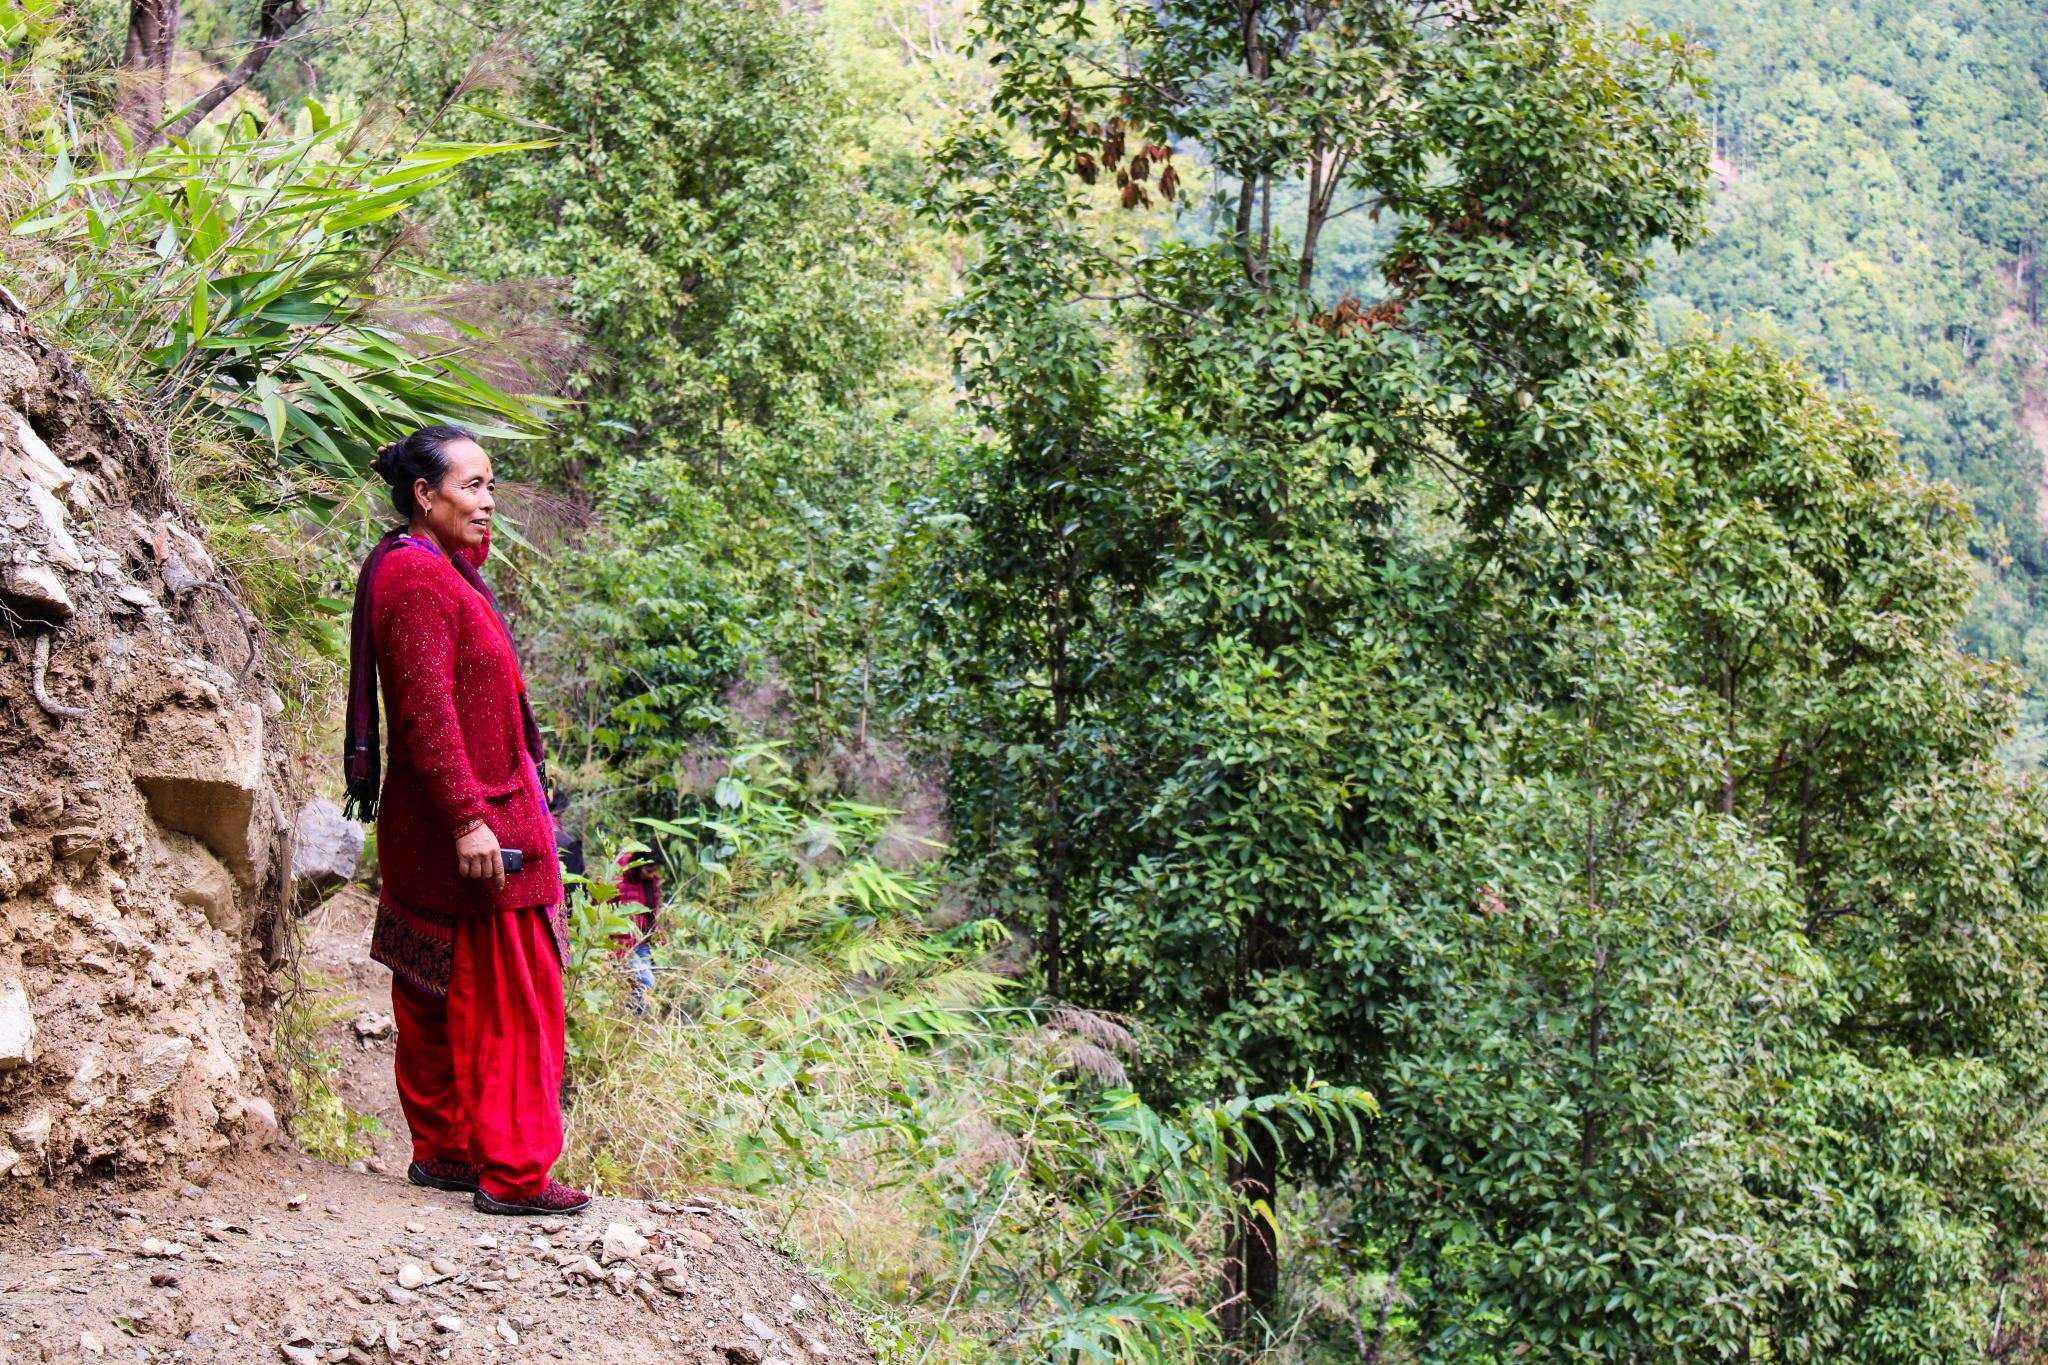 donne sono parte attiva nei progetti forestali